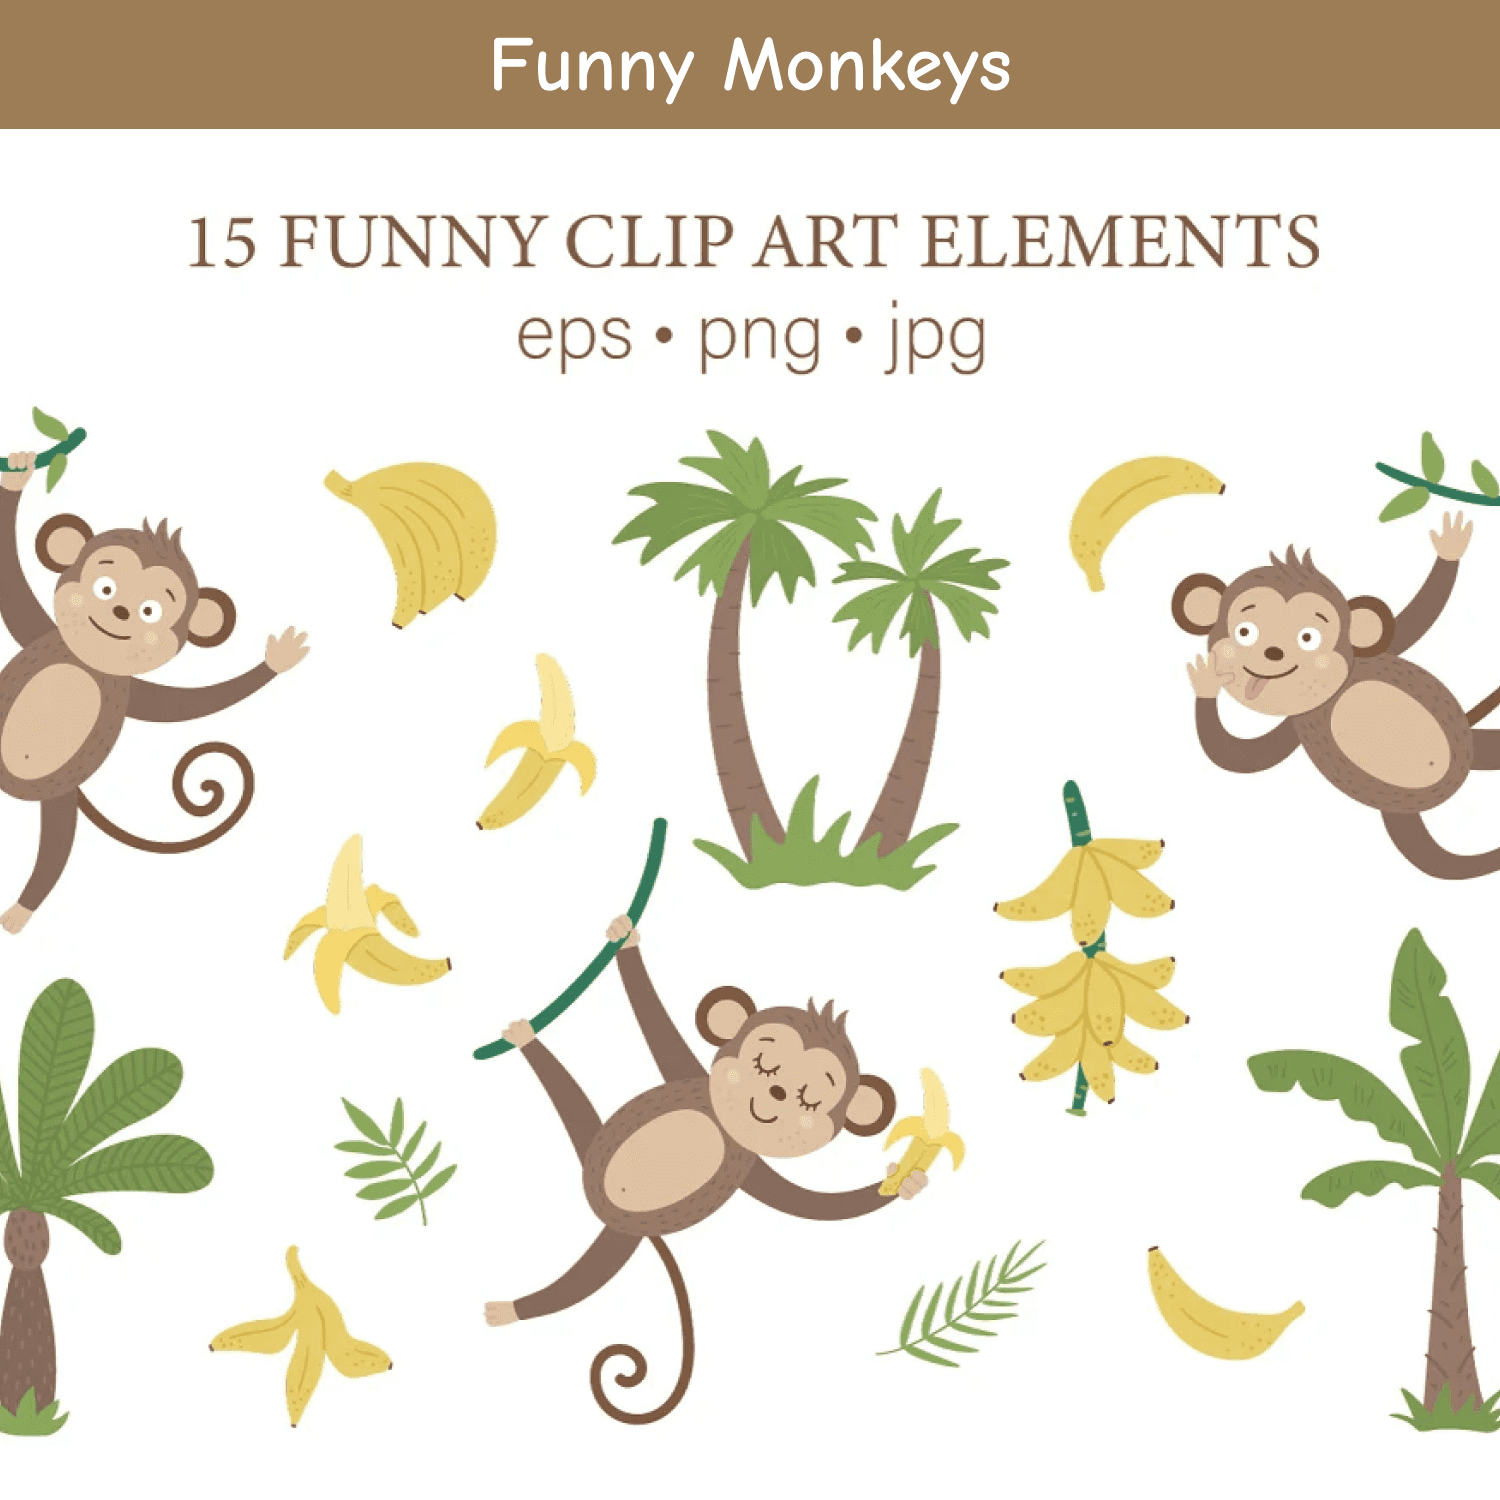 Funny Monkeys cover.